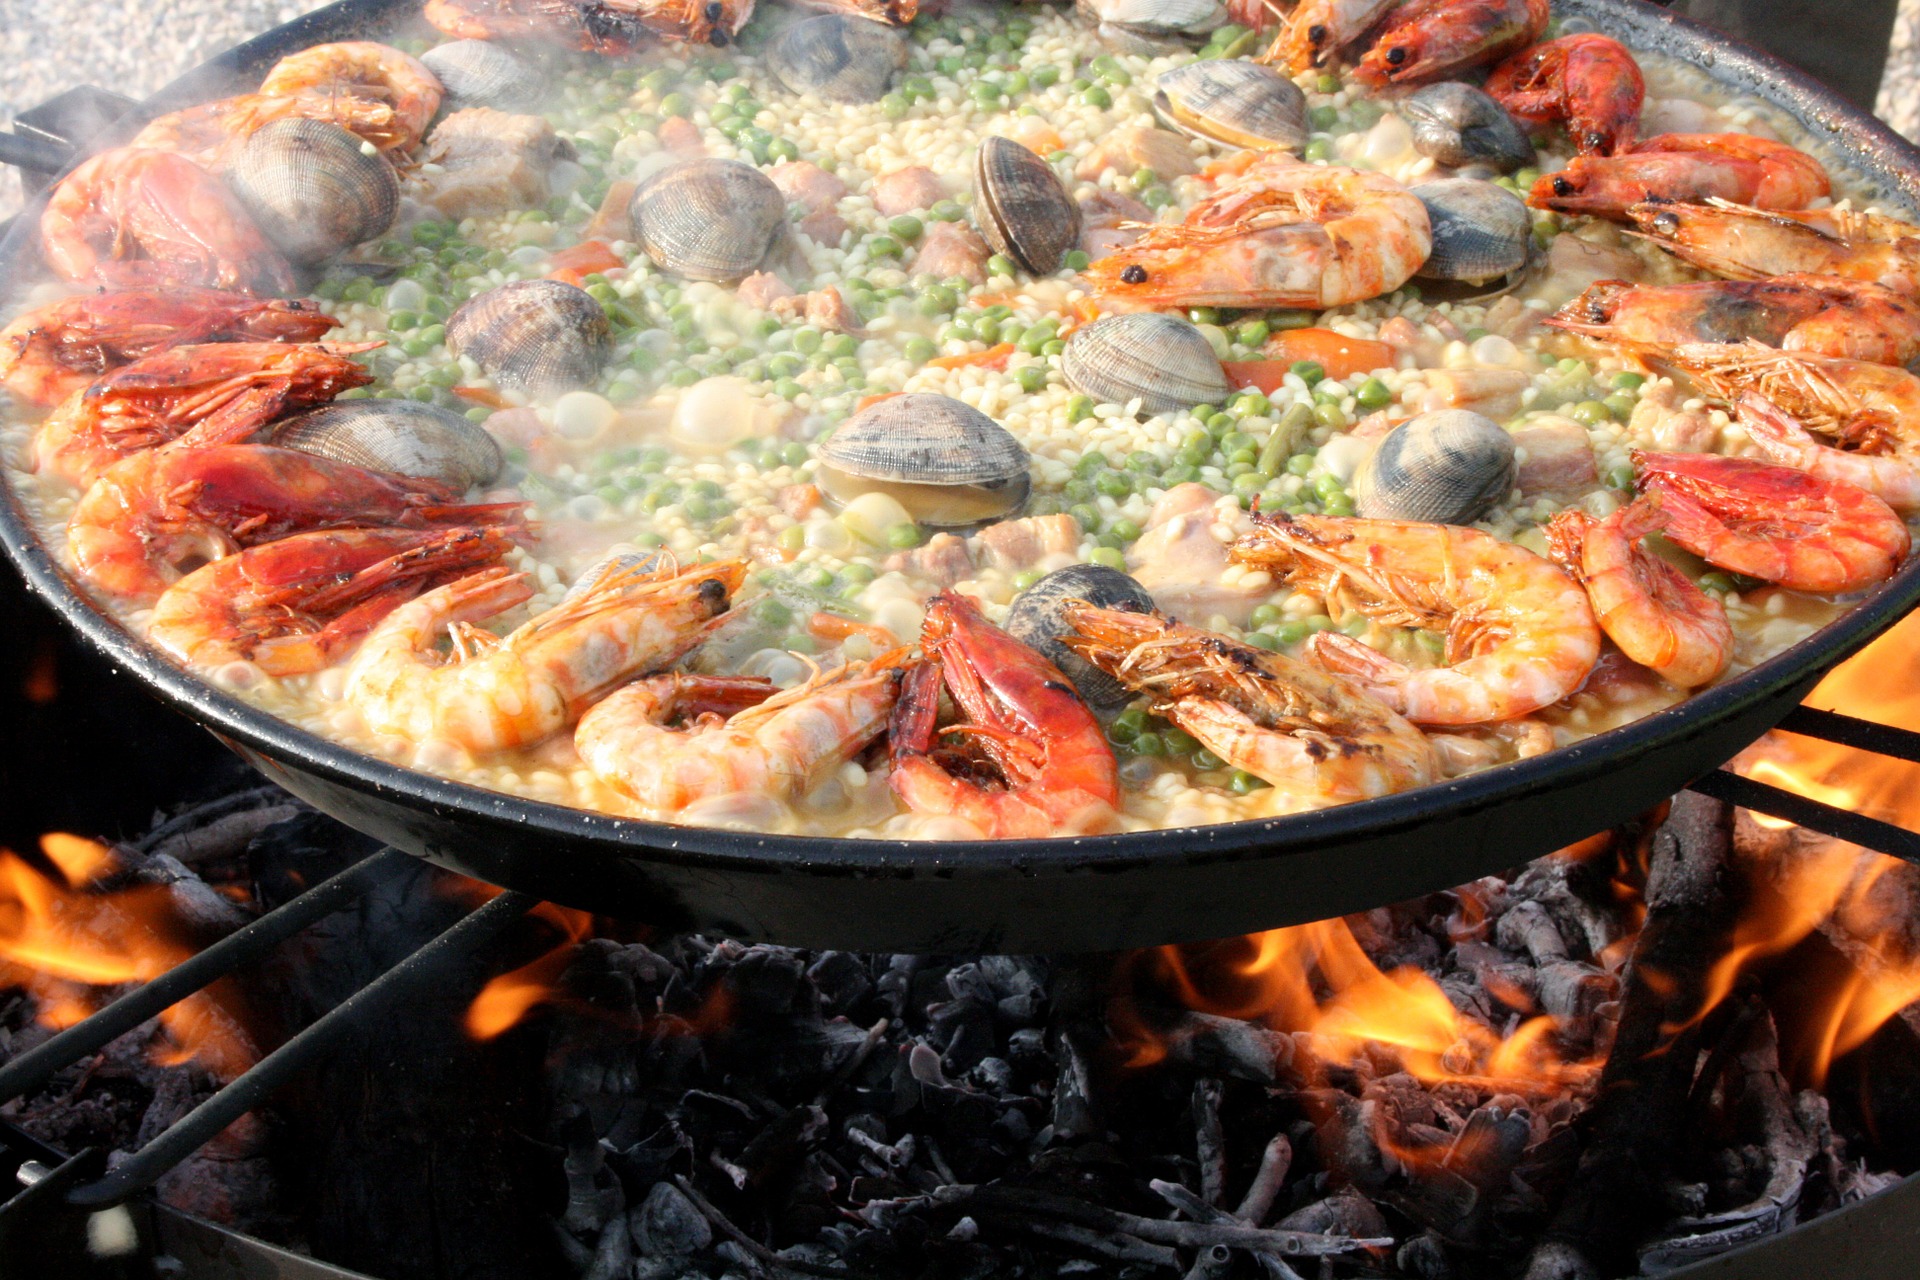 Jakie potrawy kuchni śródziemnomorskiej warto spróbować?